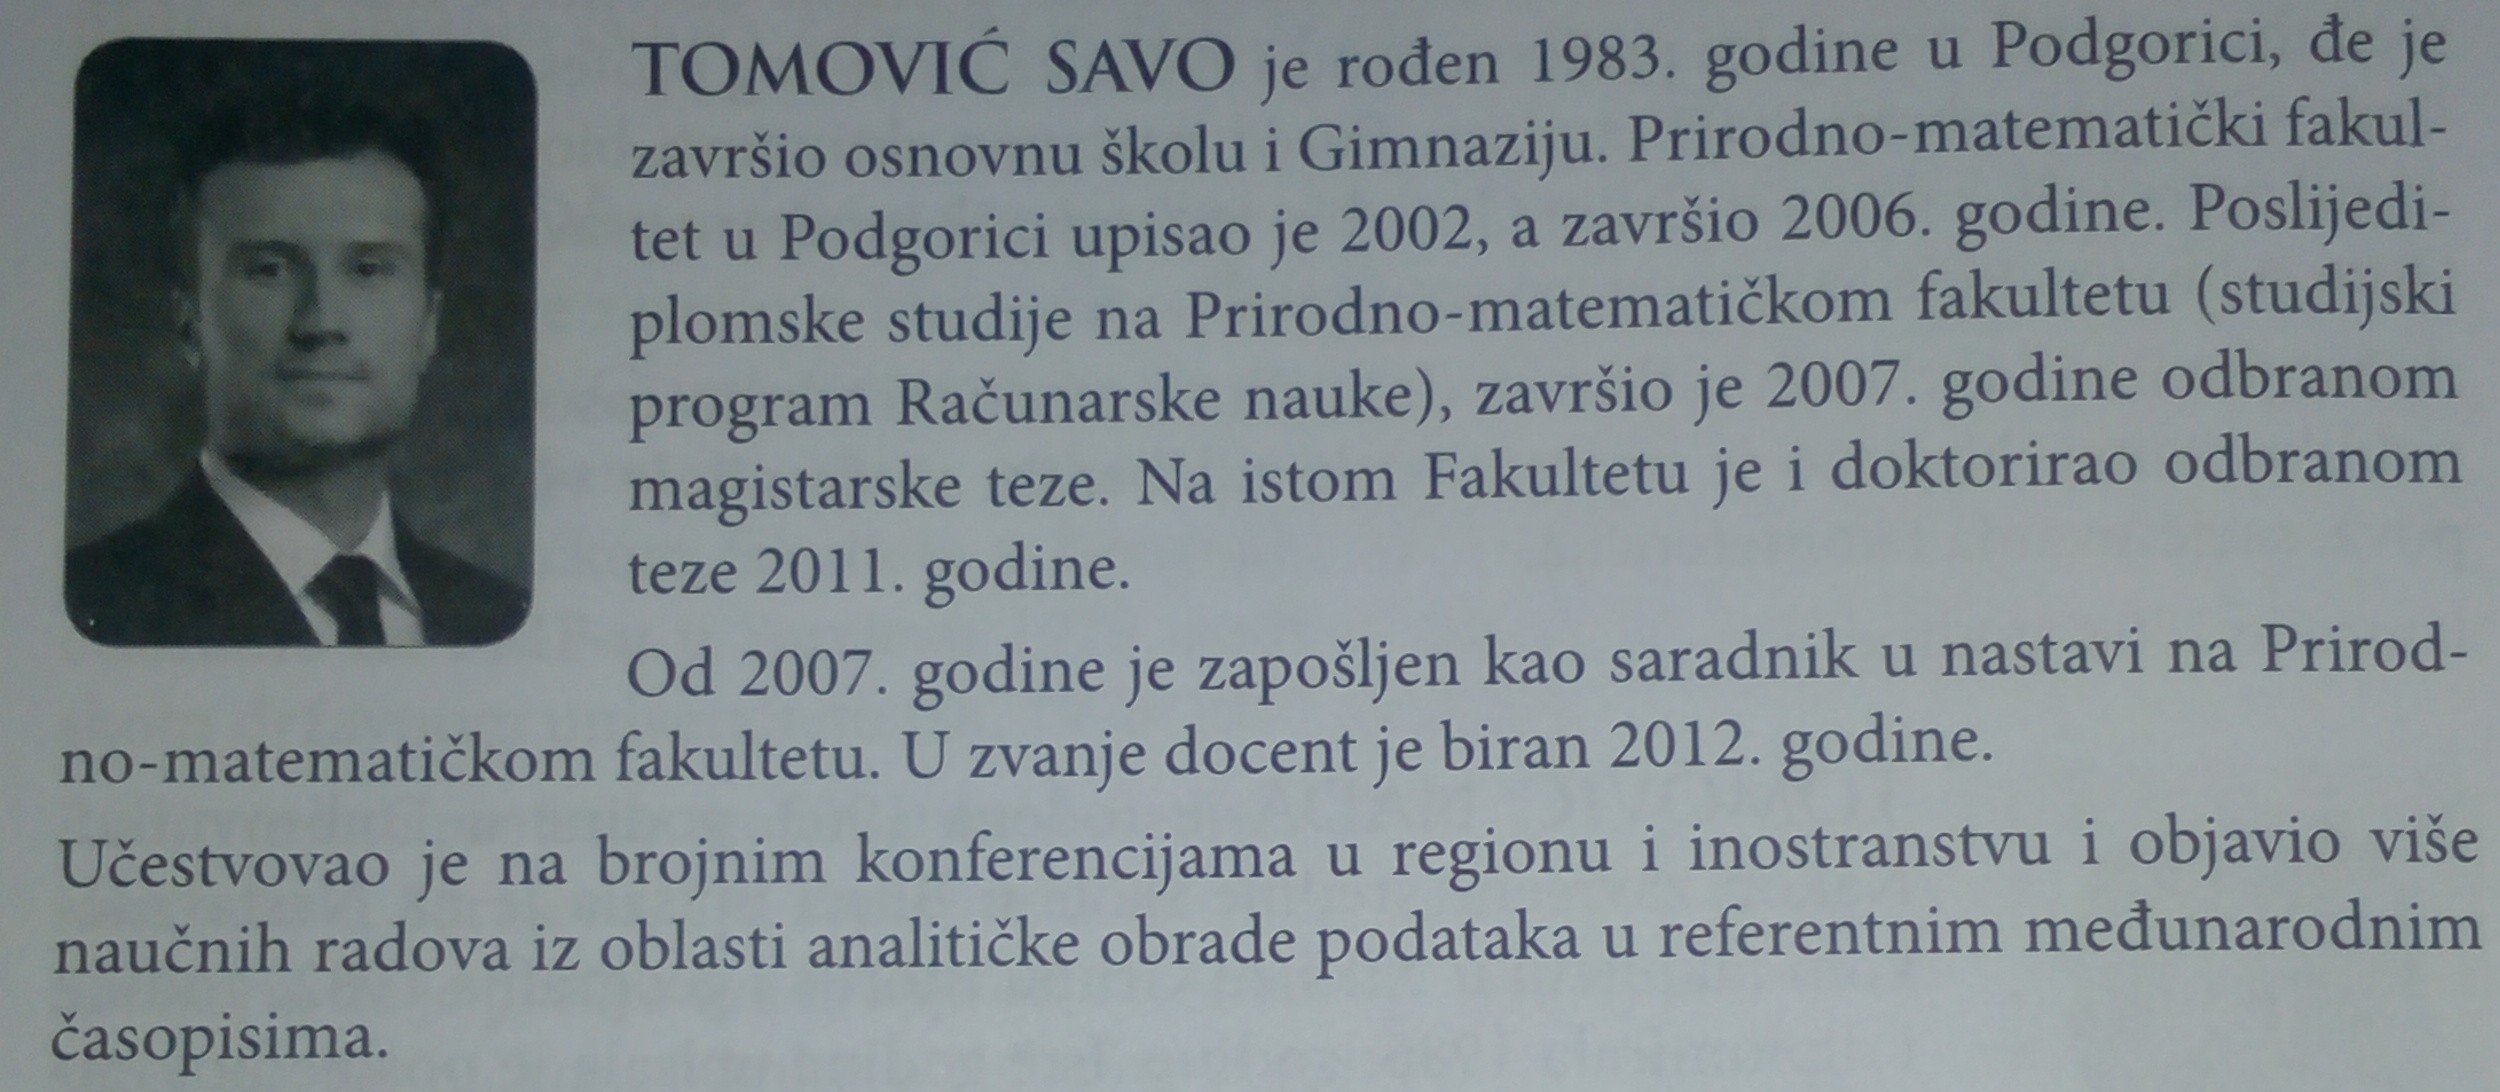 Tomović Savo